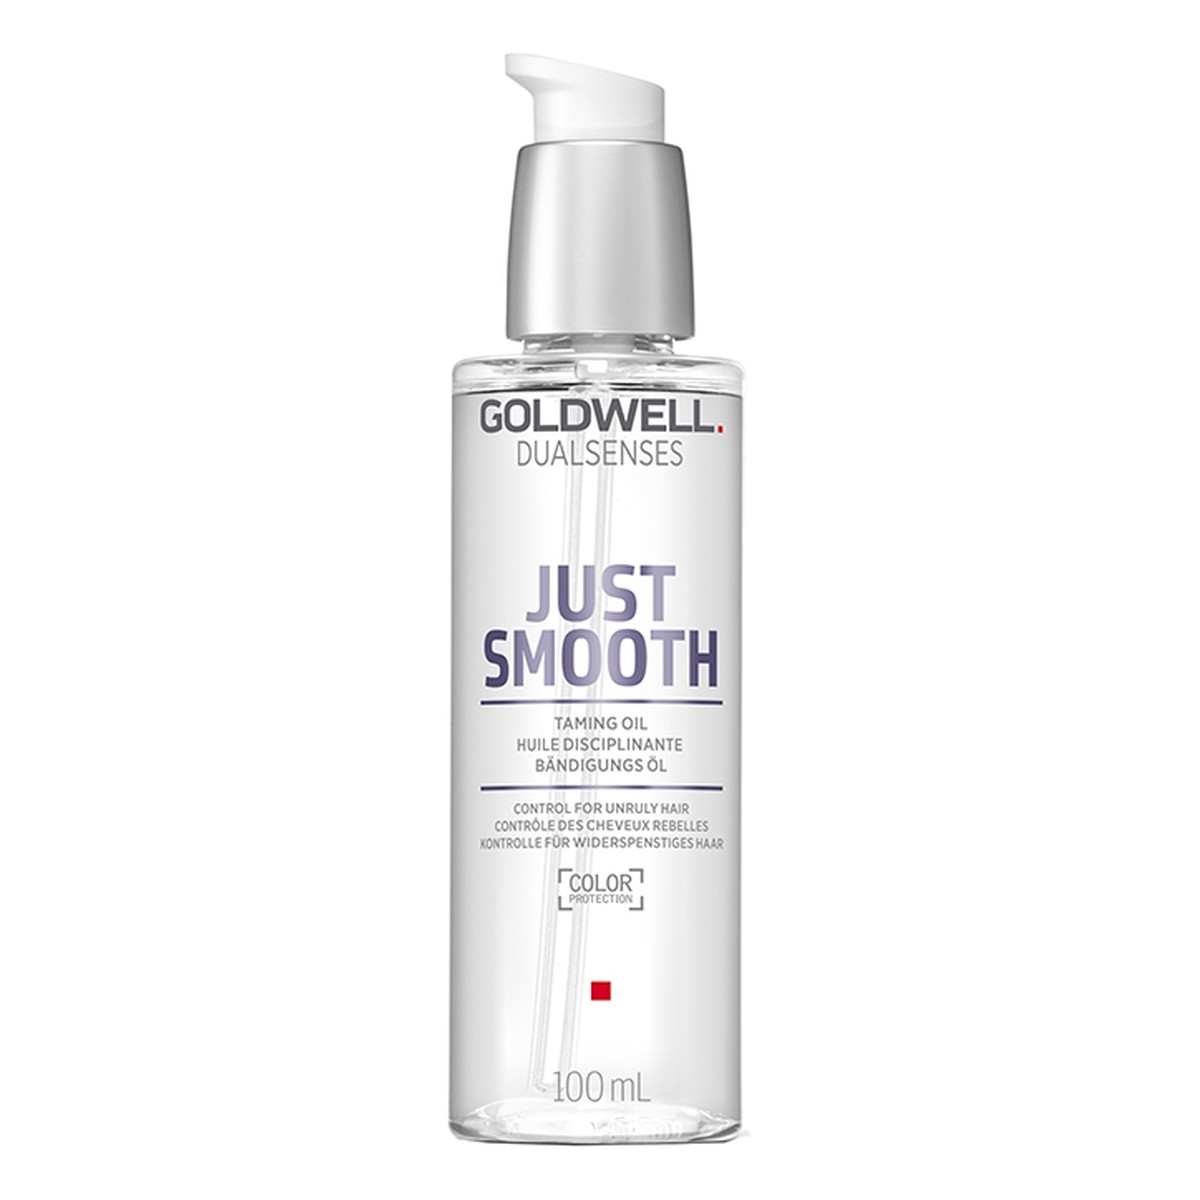 Goldwell Dualsenses Just Smooth Wygładzający olejek do włosów 100ml